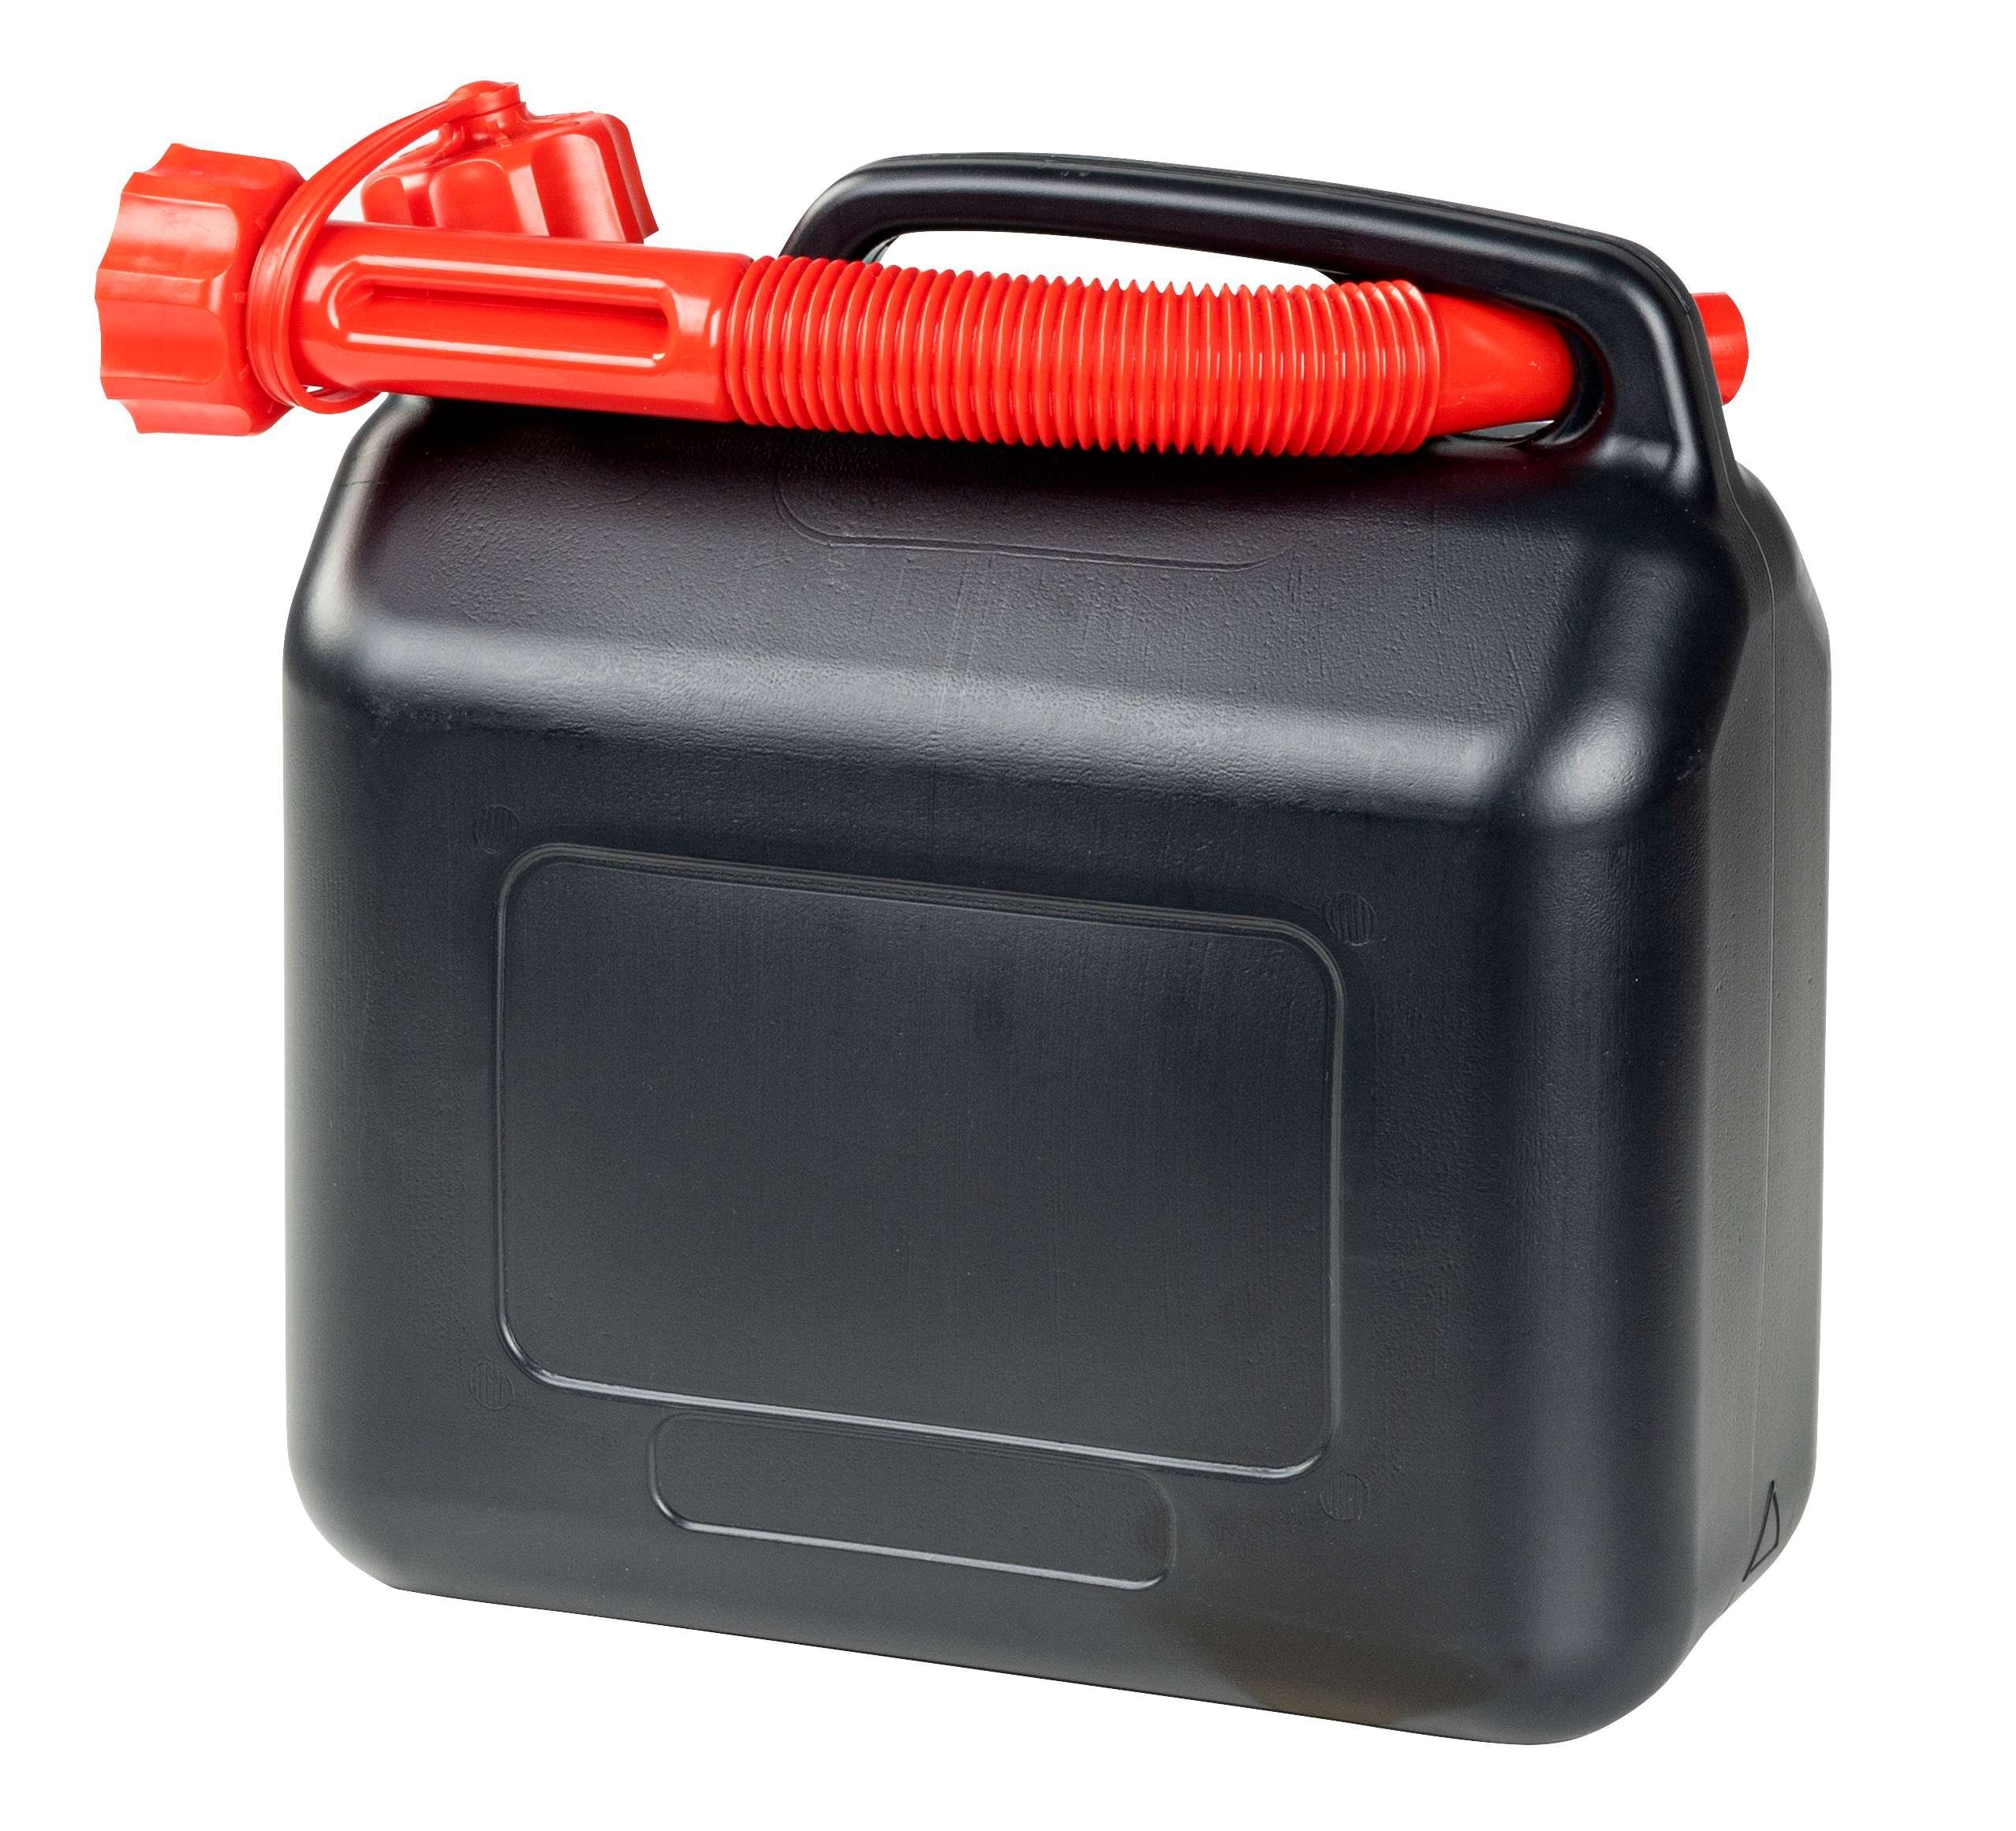 Bidon d'essence 5 litres, bidon de carburant homologué UN, bidon de réserve avec fermeture de sécurité noir/rouge